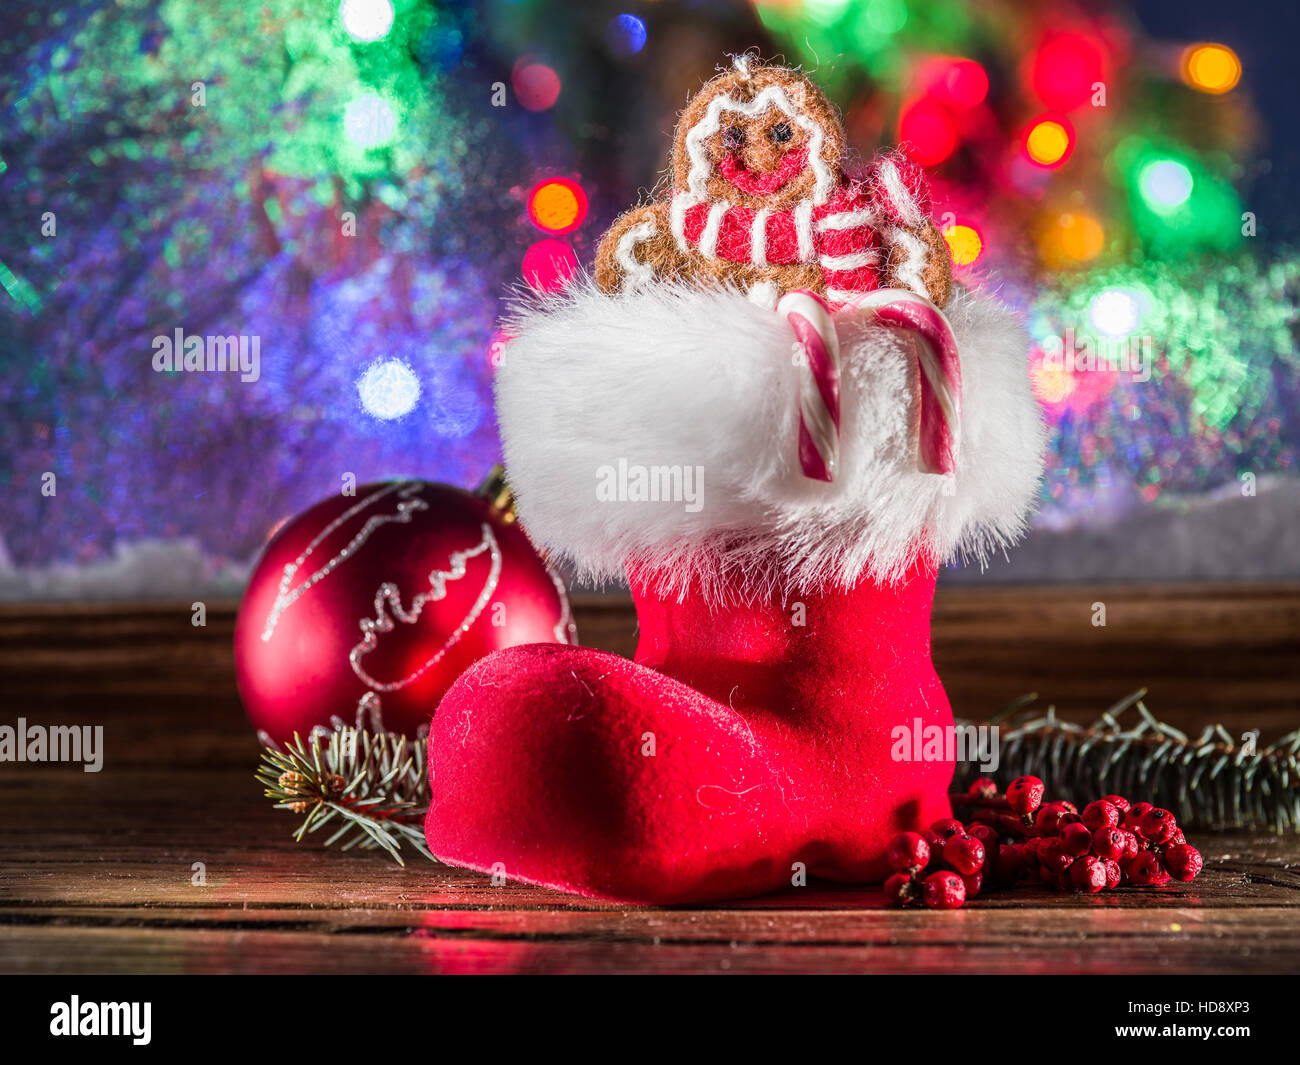 Weihnachts-Strumpf, Spielzeug Ingwer Mann und Candy Canes. Weihnachten-Symbole. Stockfoto